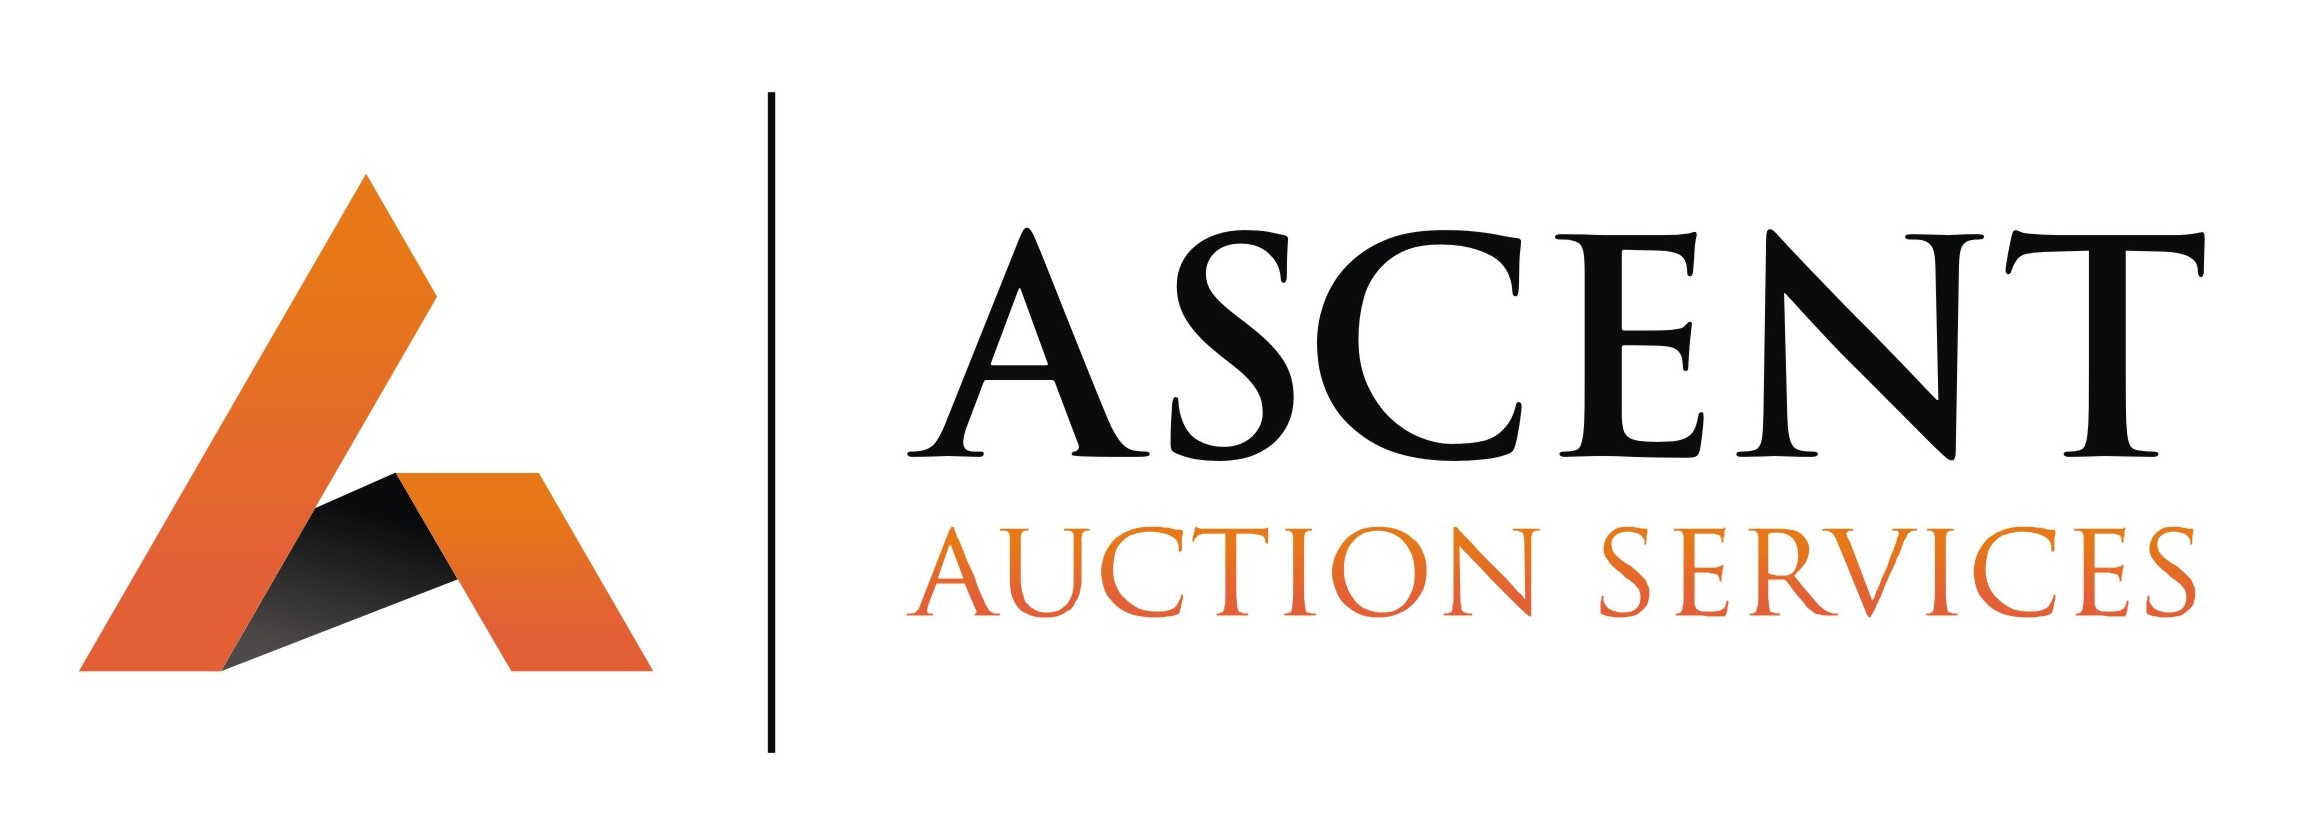 Ascent Auction